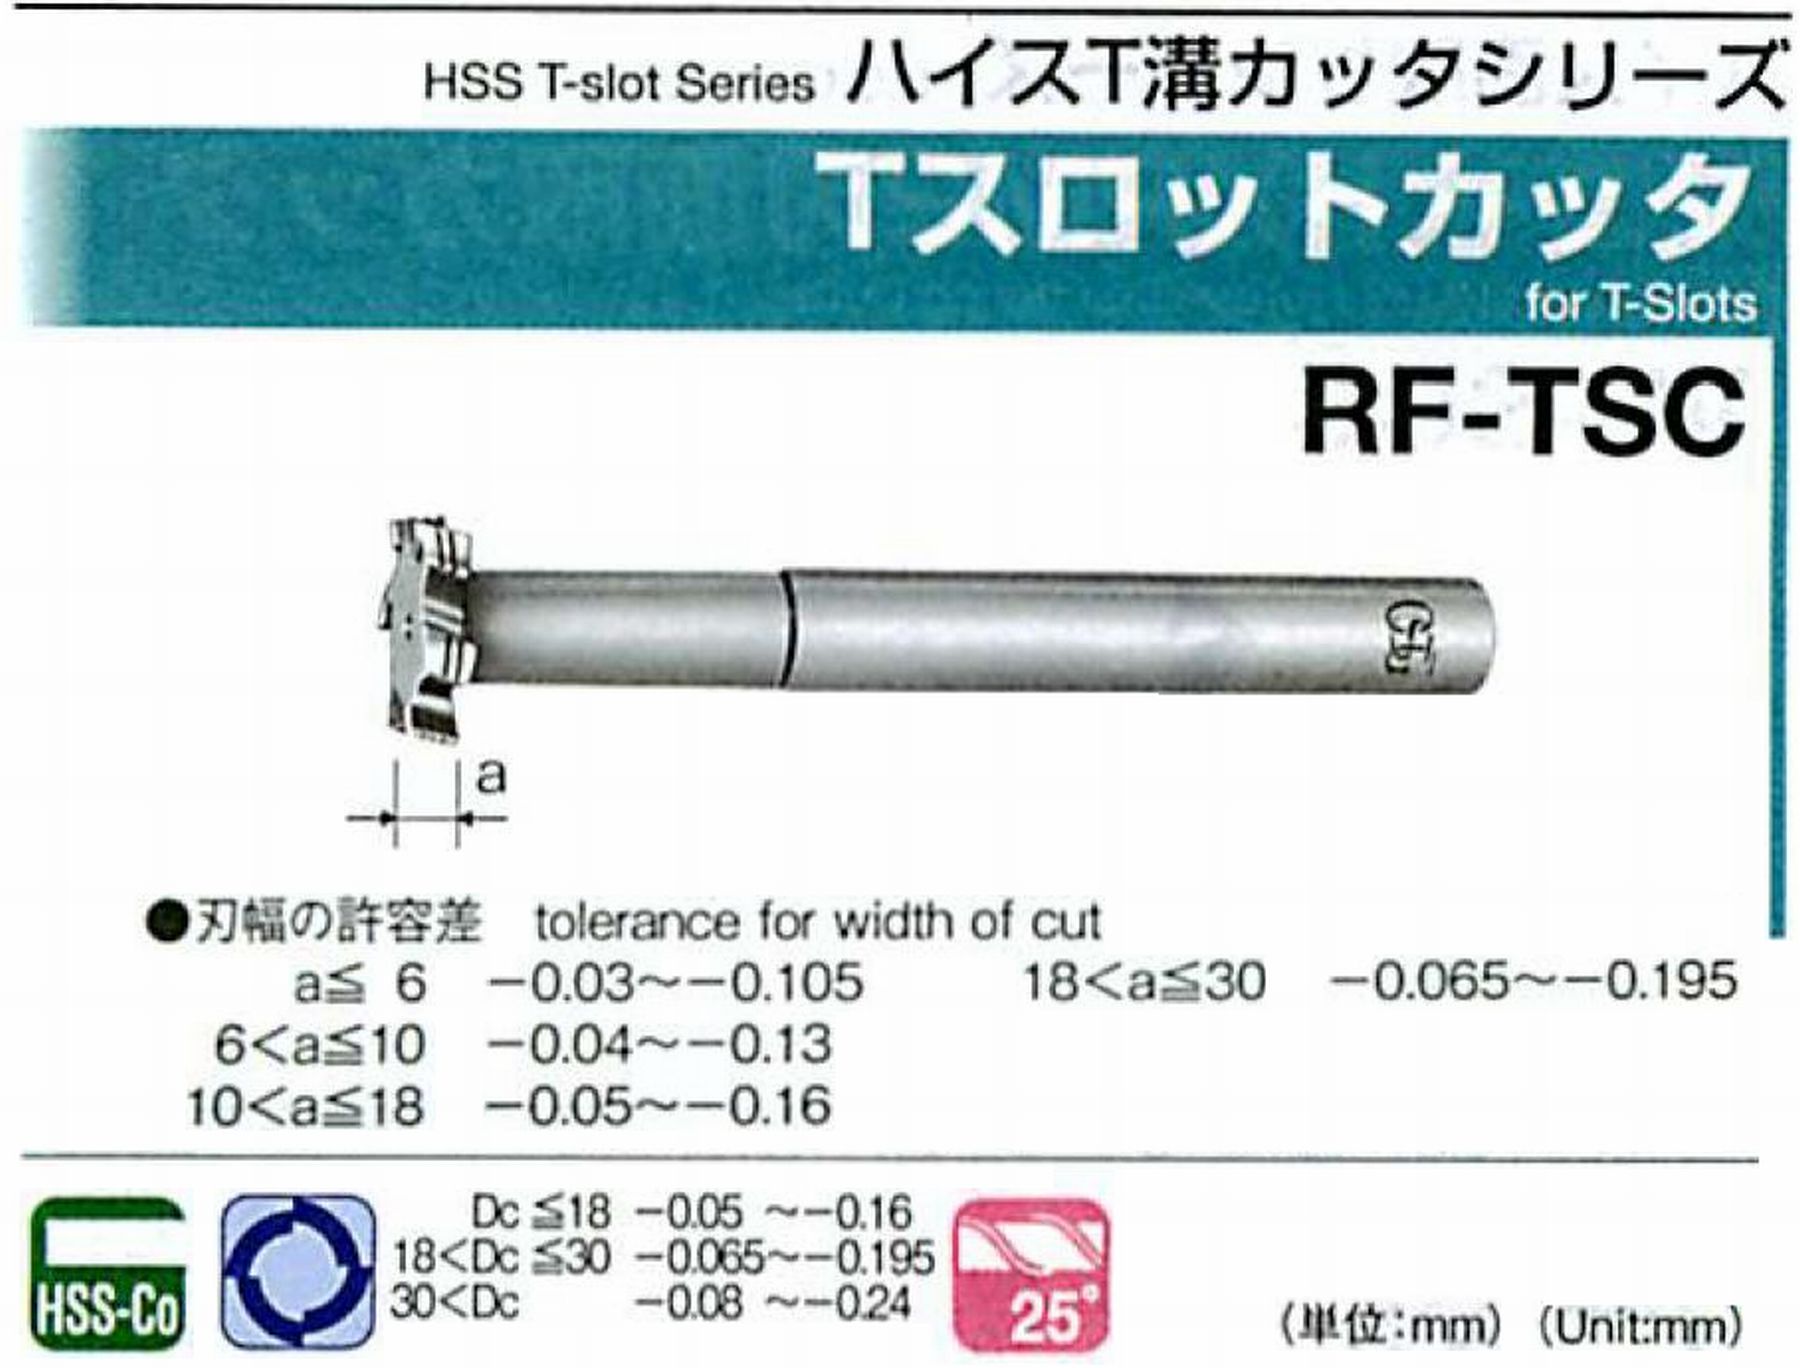 オーエスジー/OSG Tスロットカッタ RF-TSC 外径30 刃幅10 全長145 シャンク径16mm 首下長50 首径15 刃数6